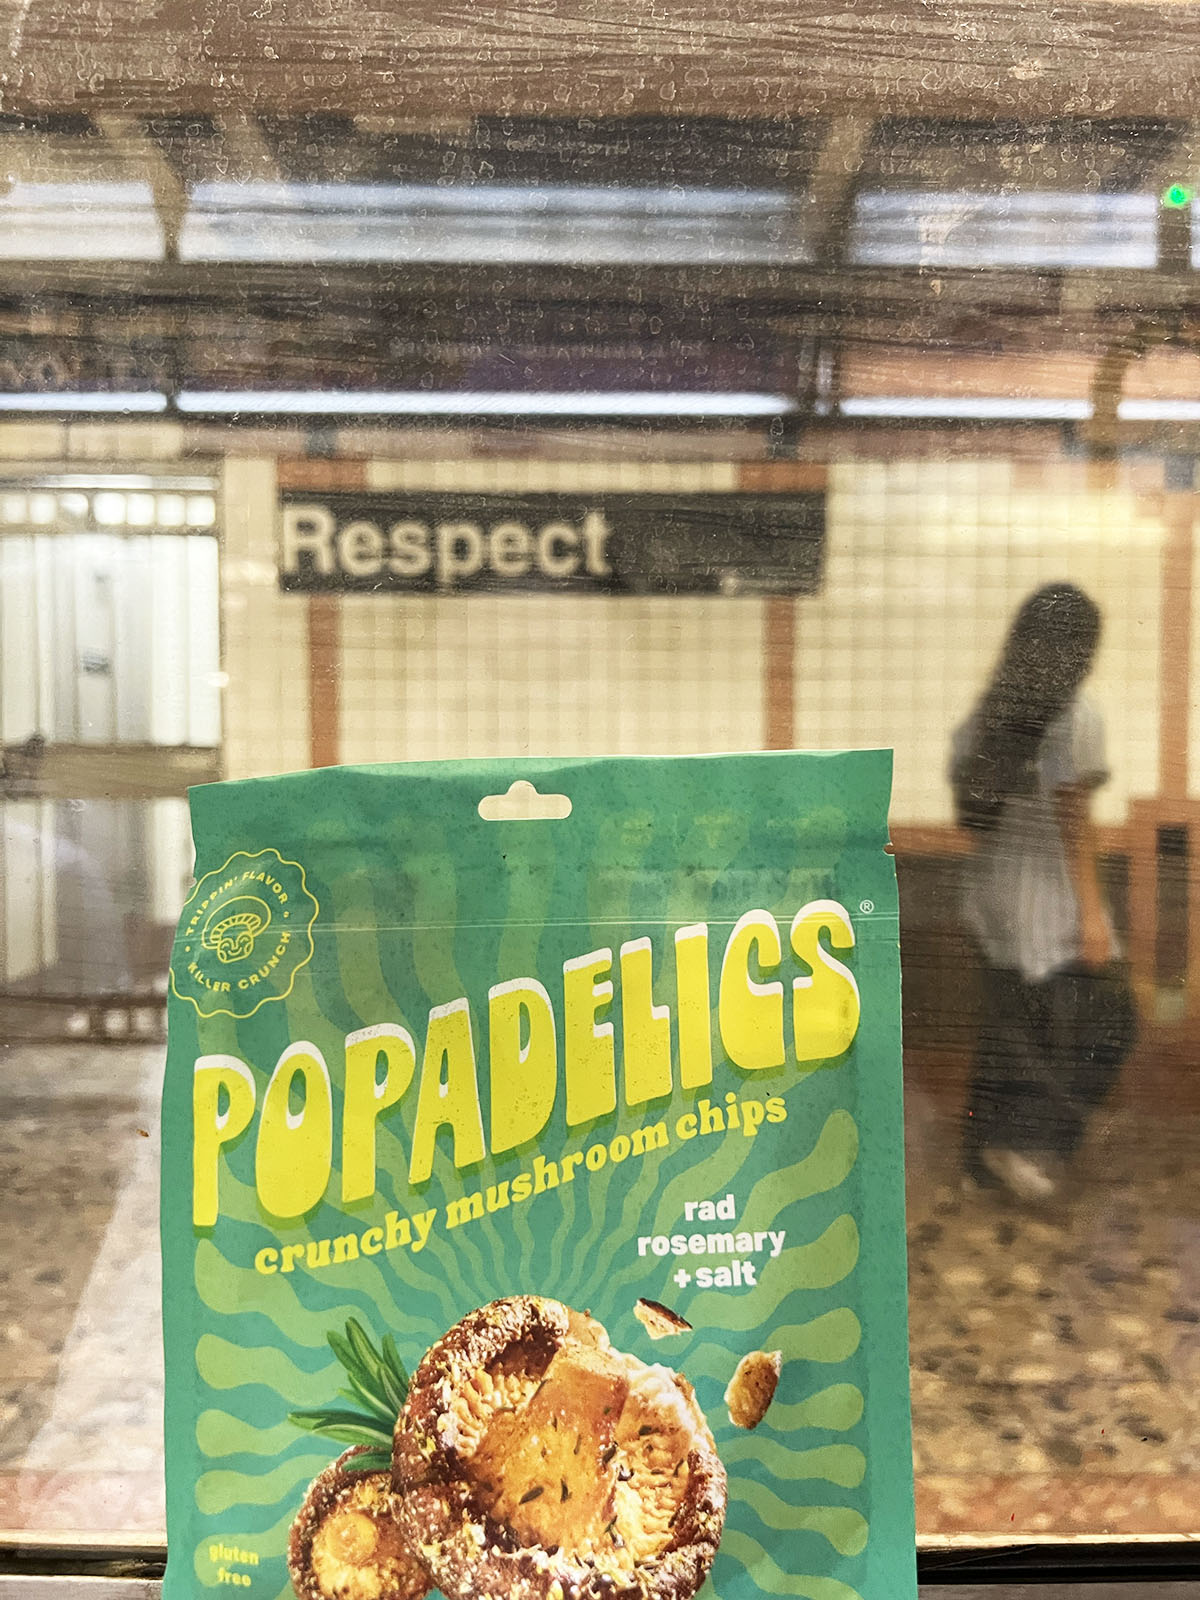 Rad Rosemary + Salt - Popadelics Crunchy Mushroom Chips - Shop